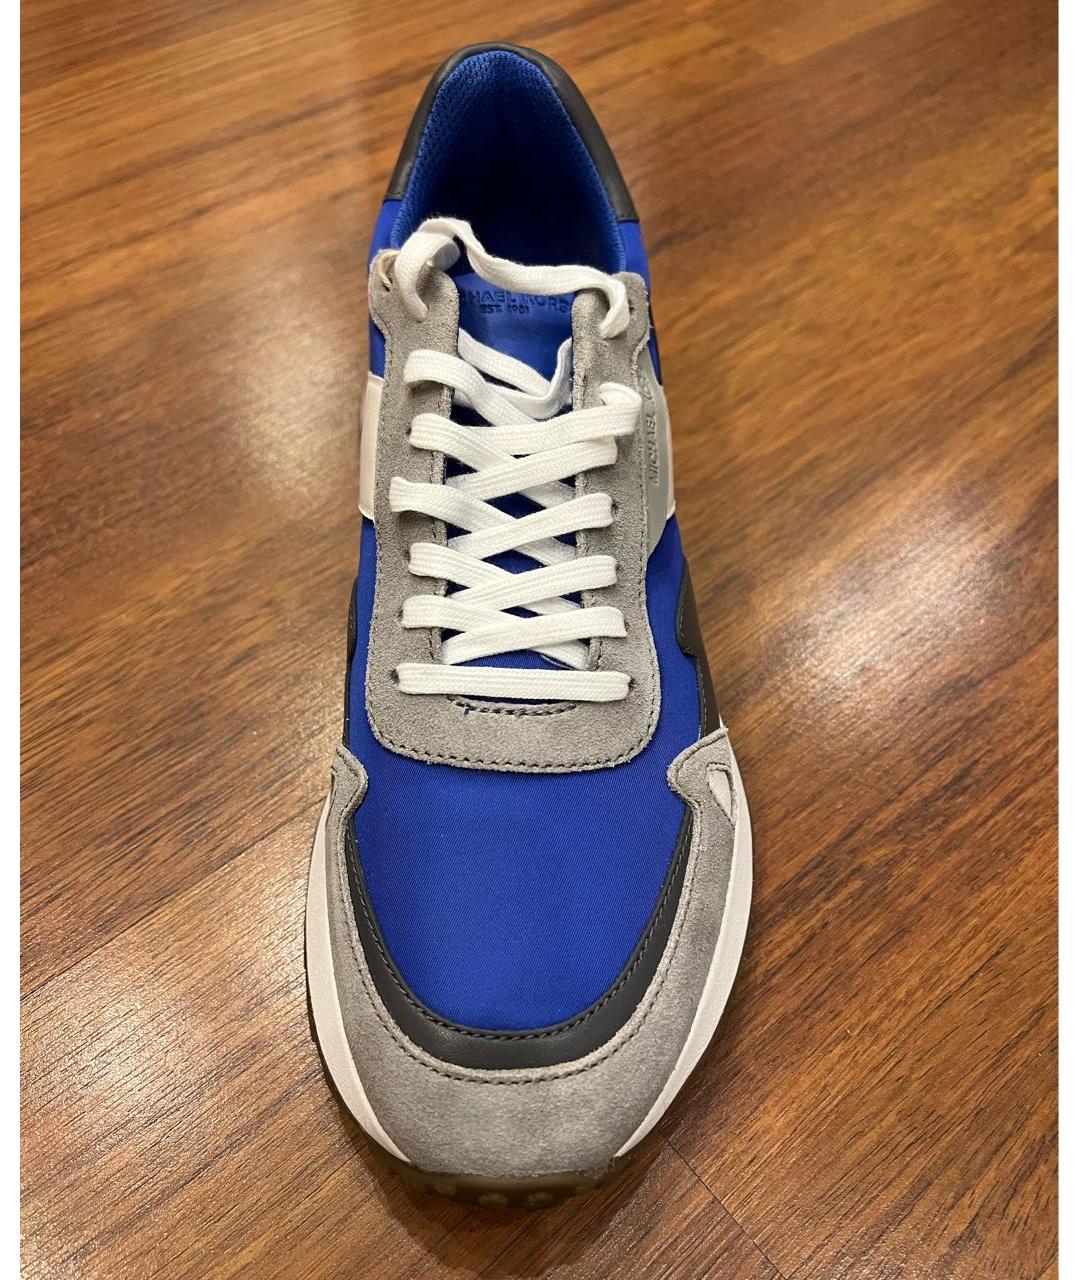 MICHAEL KORS Синие низкие кроссовки / кеды, фото 2